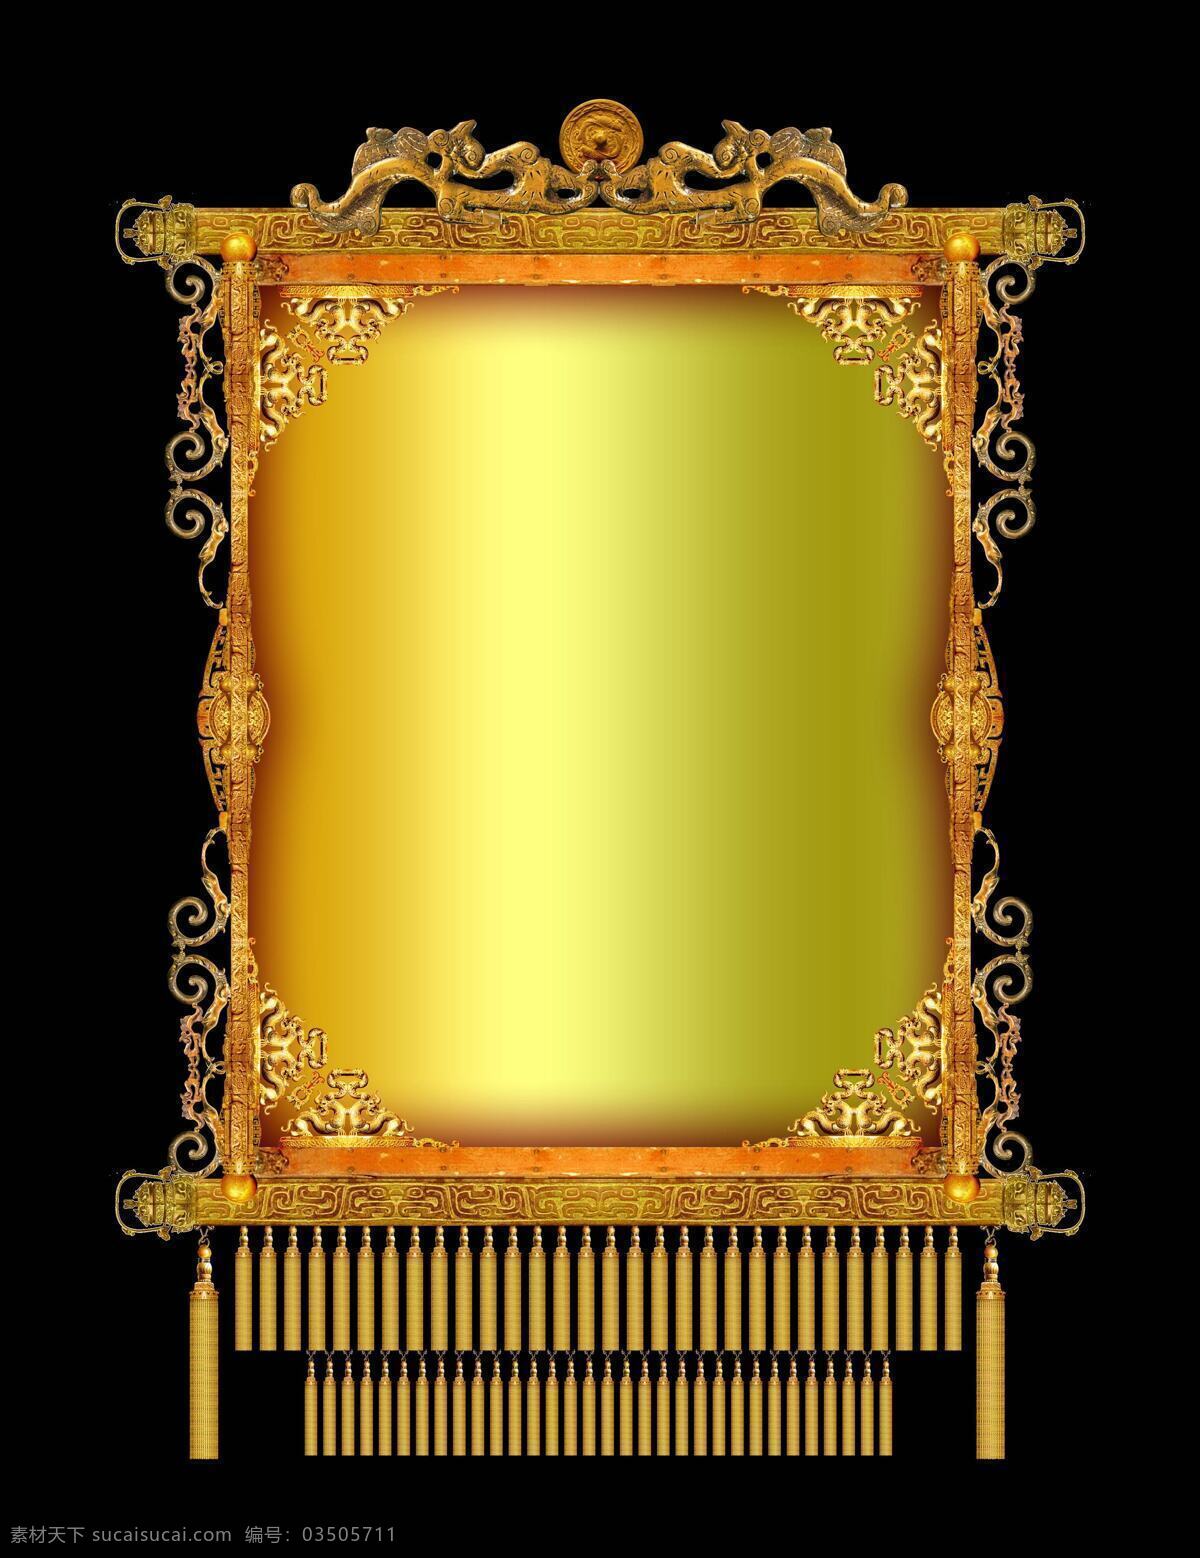 古典 灯笼 形状 传统 底纹 建筑风格 金色 底纹边框